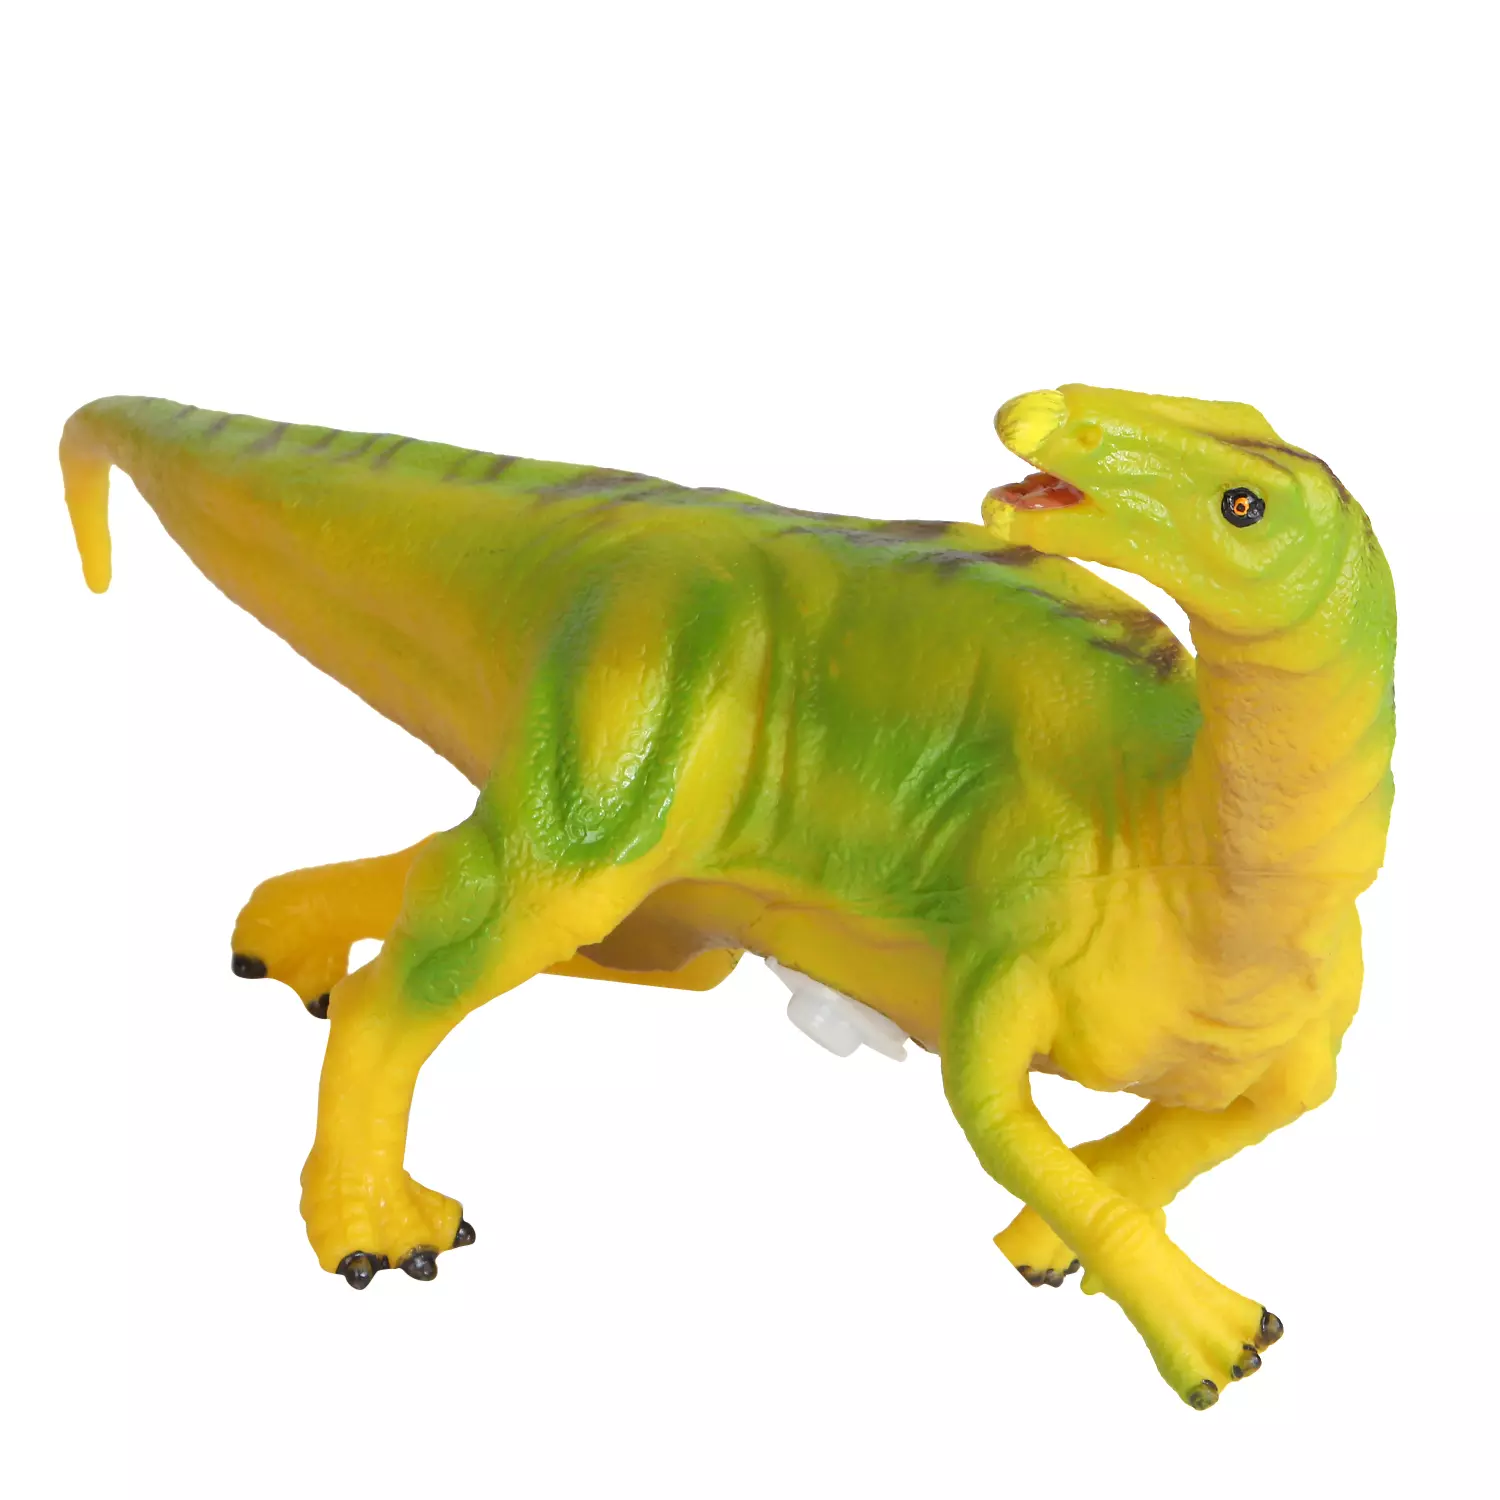 Игрушка Динозавр, эластичная поверхность с шероховатостями, мягкий наполнитель, бирка, 24.5X9.5X11.0